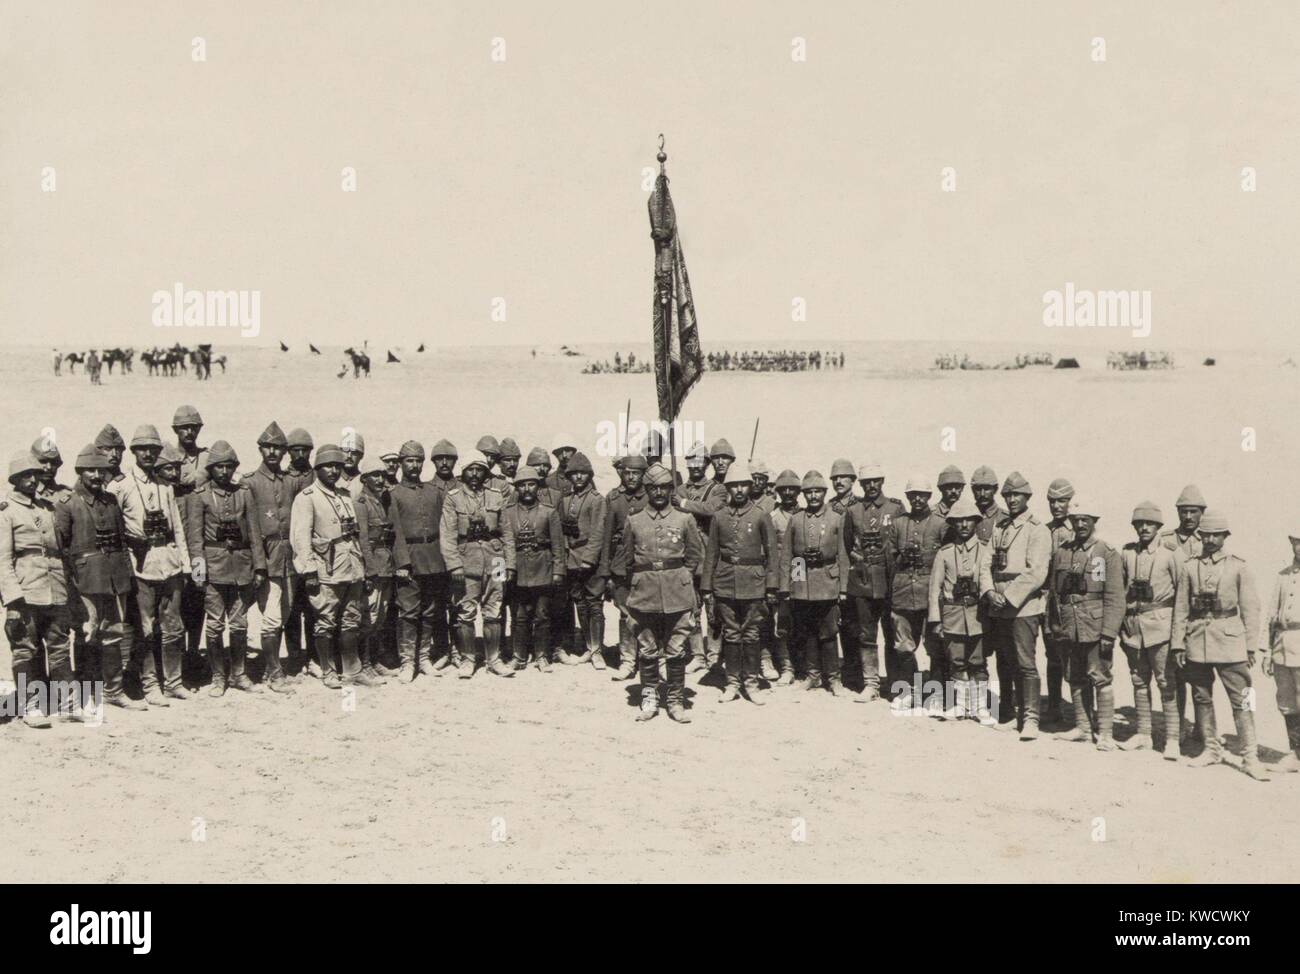 Ottomano vittorioso ufficiali della prima battaglia di Gaza, marzo 1917. Respinsero il British egiziano forza expeditionary il 26 marzo (BSLOC_2017_1_159) Foto Stock